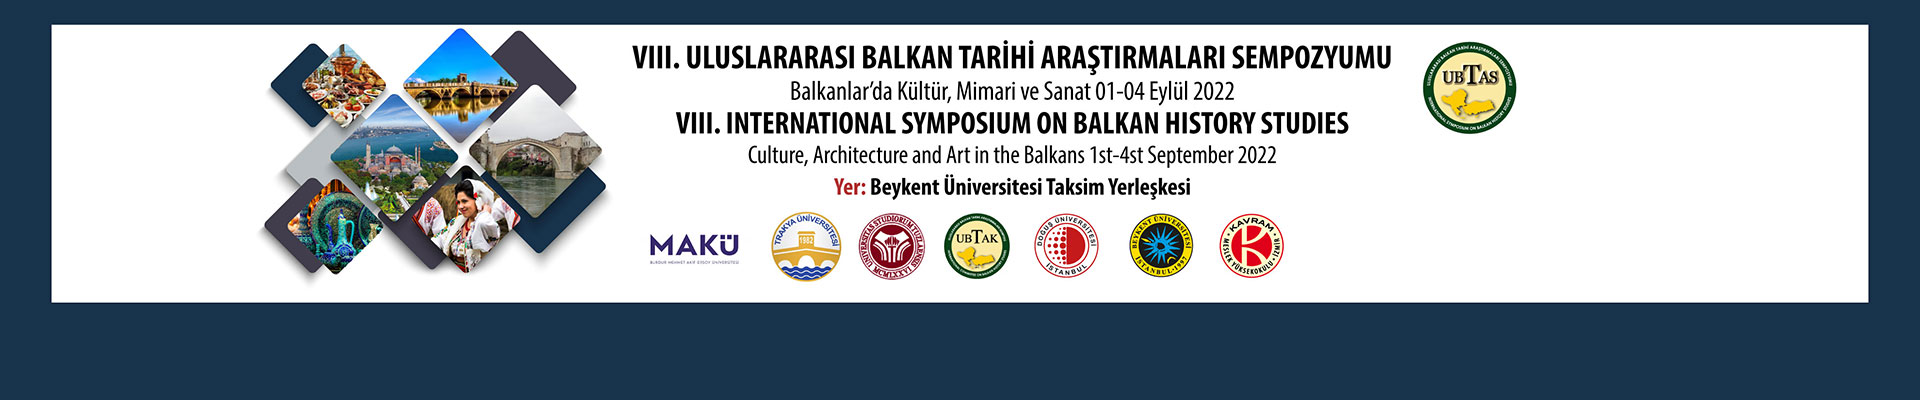 VIII. International Symposium on Balkan History Studies